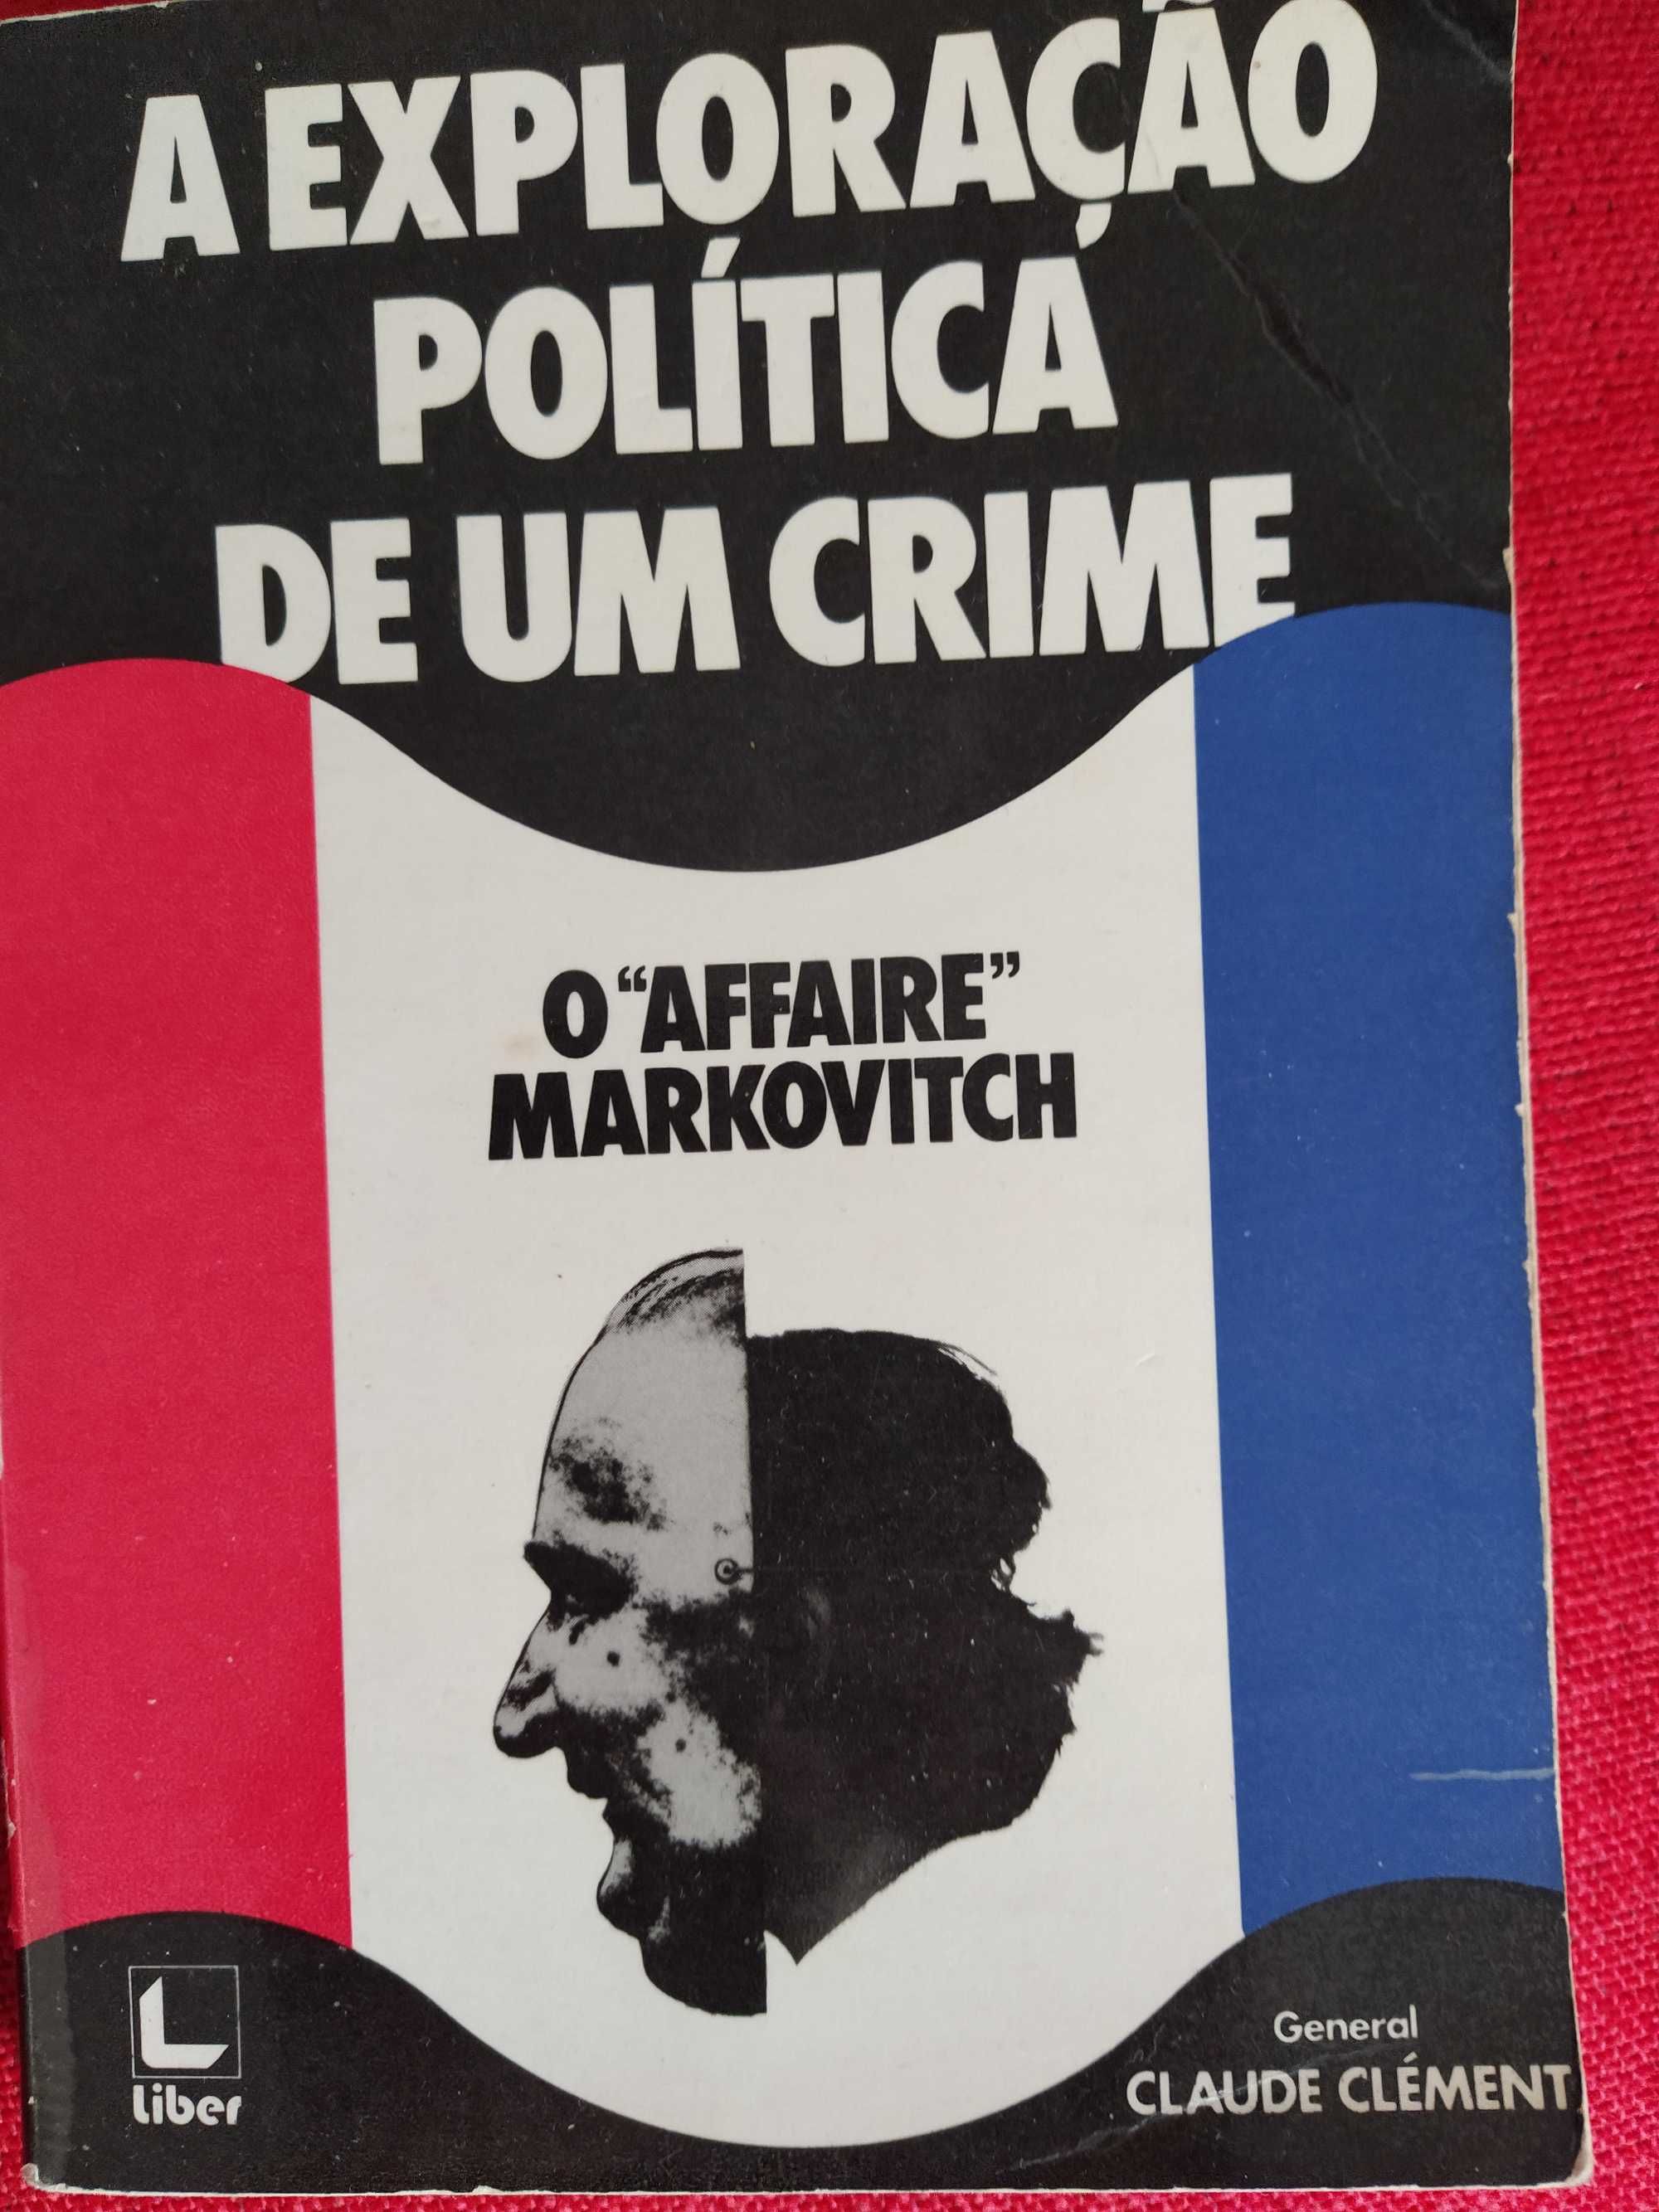 O Affaire Markovitch - Exploração Política de um Crime